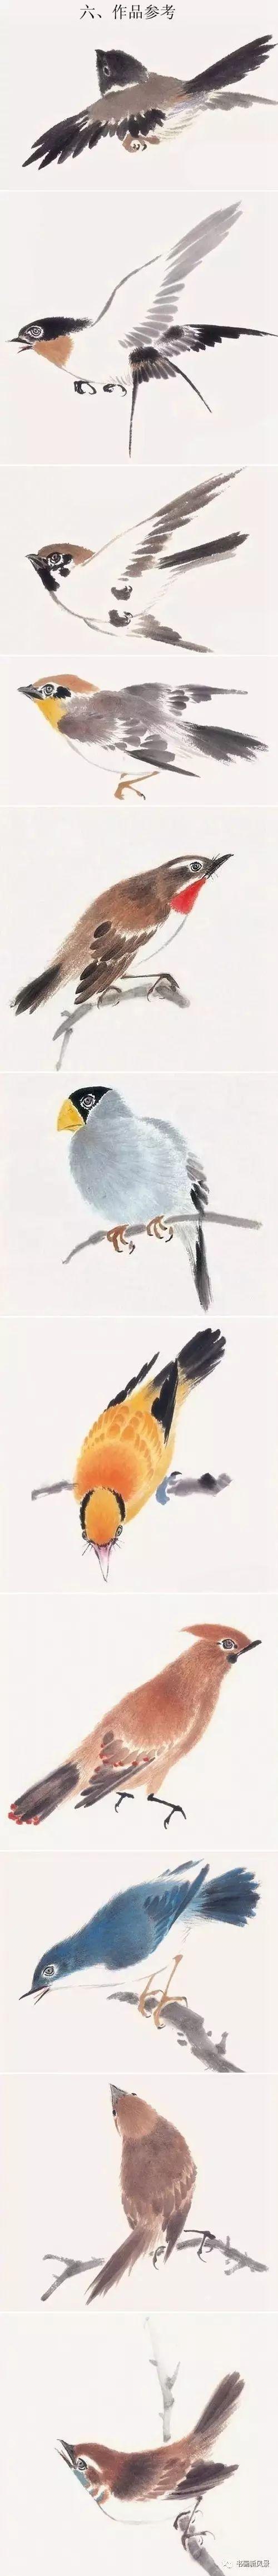 看看鸟各种姿态的画法